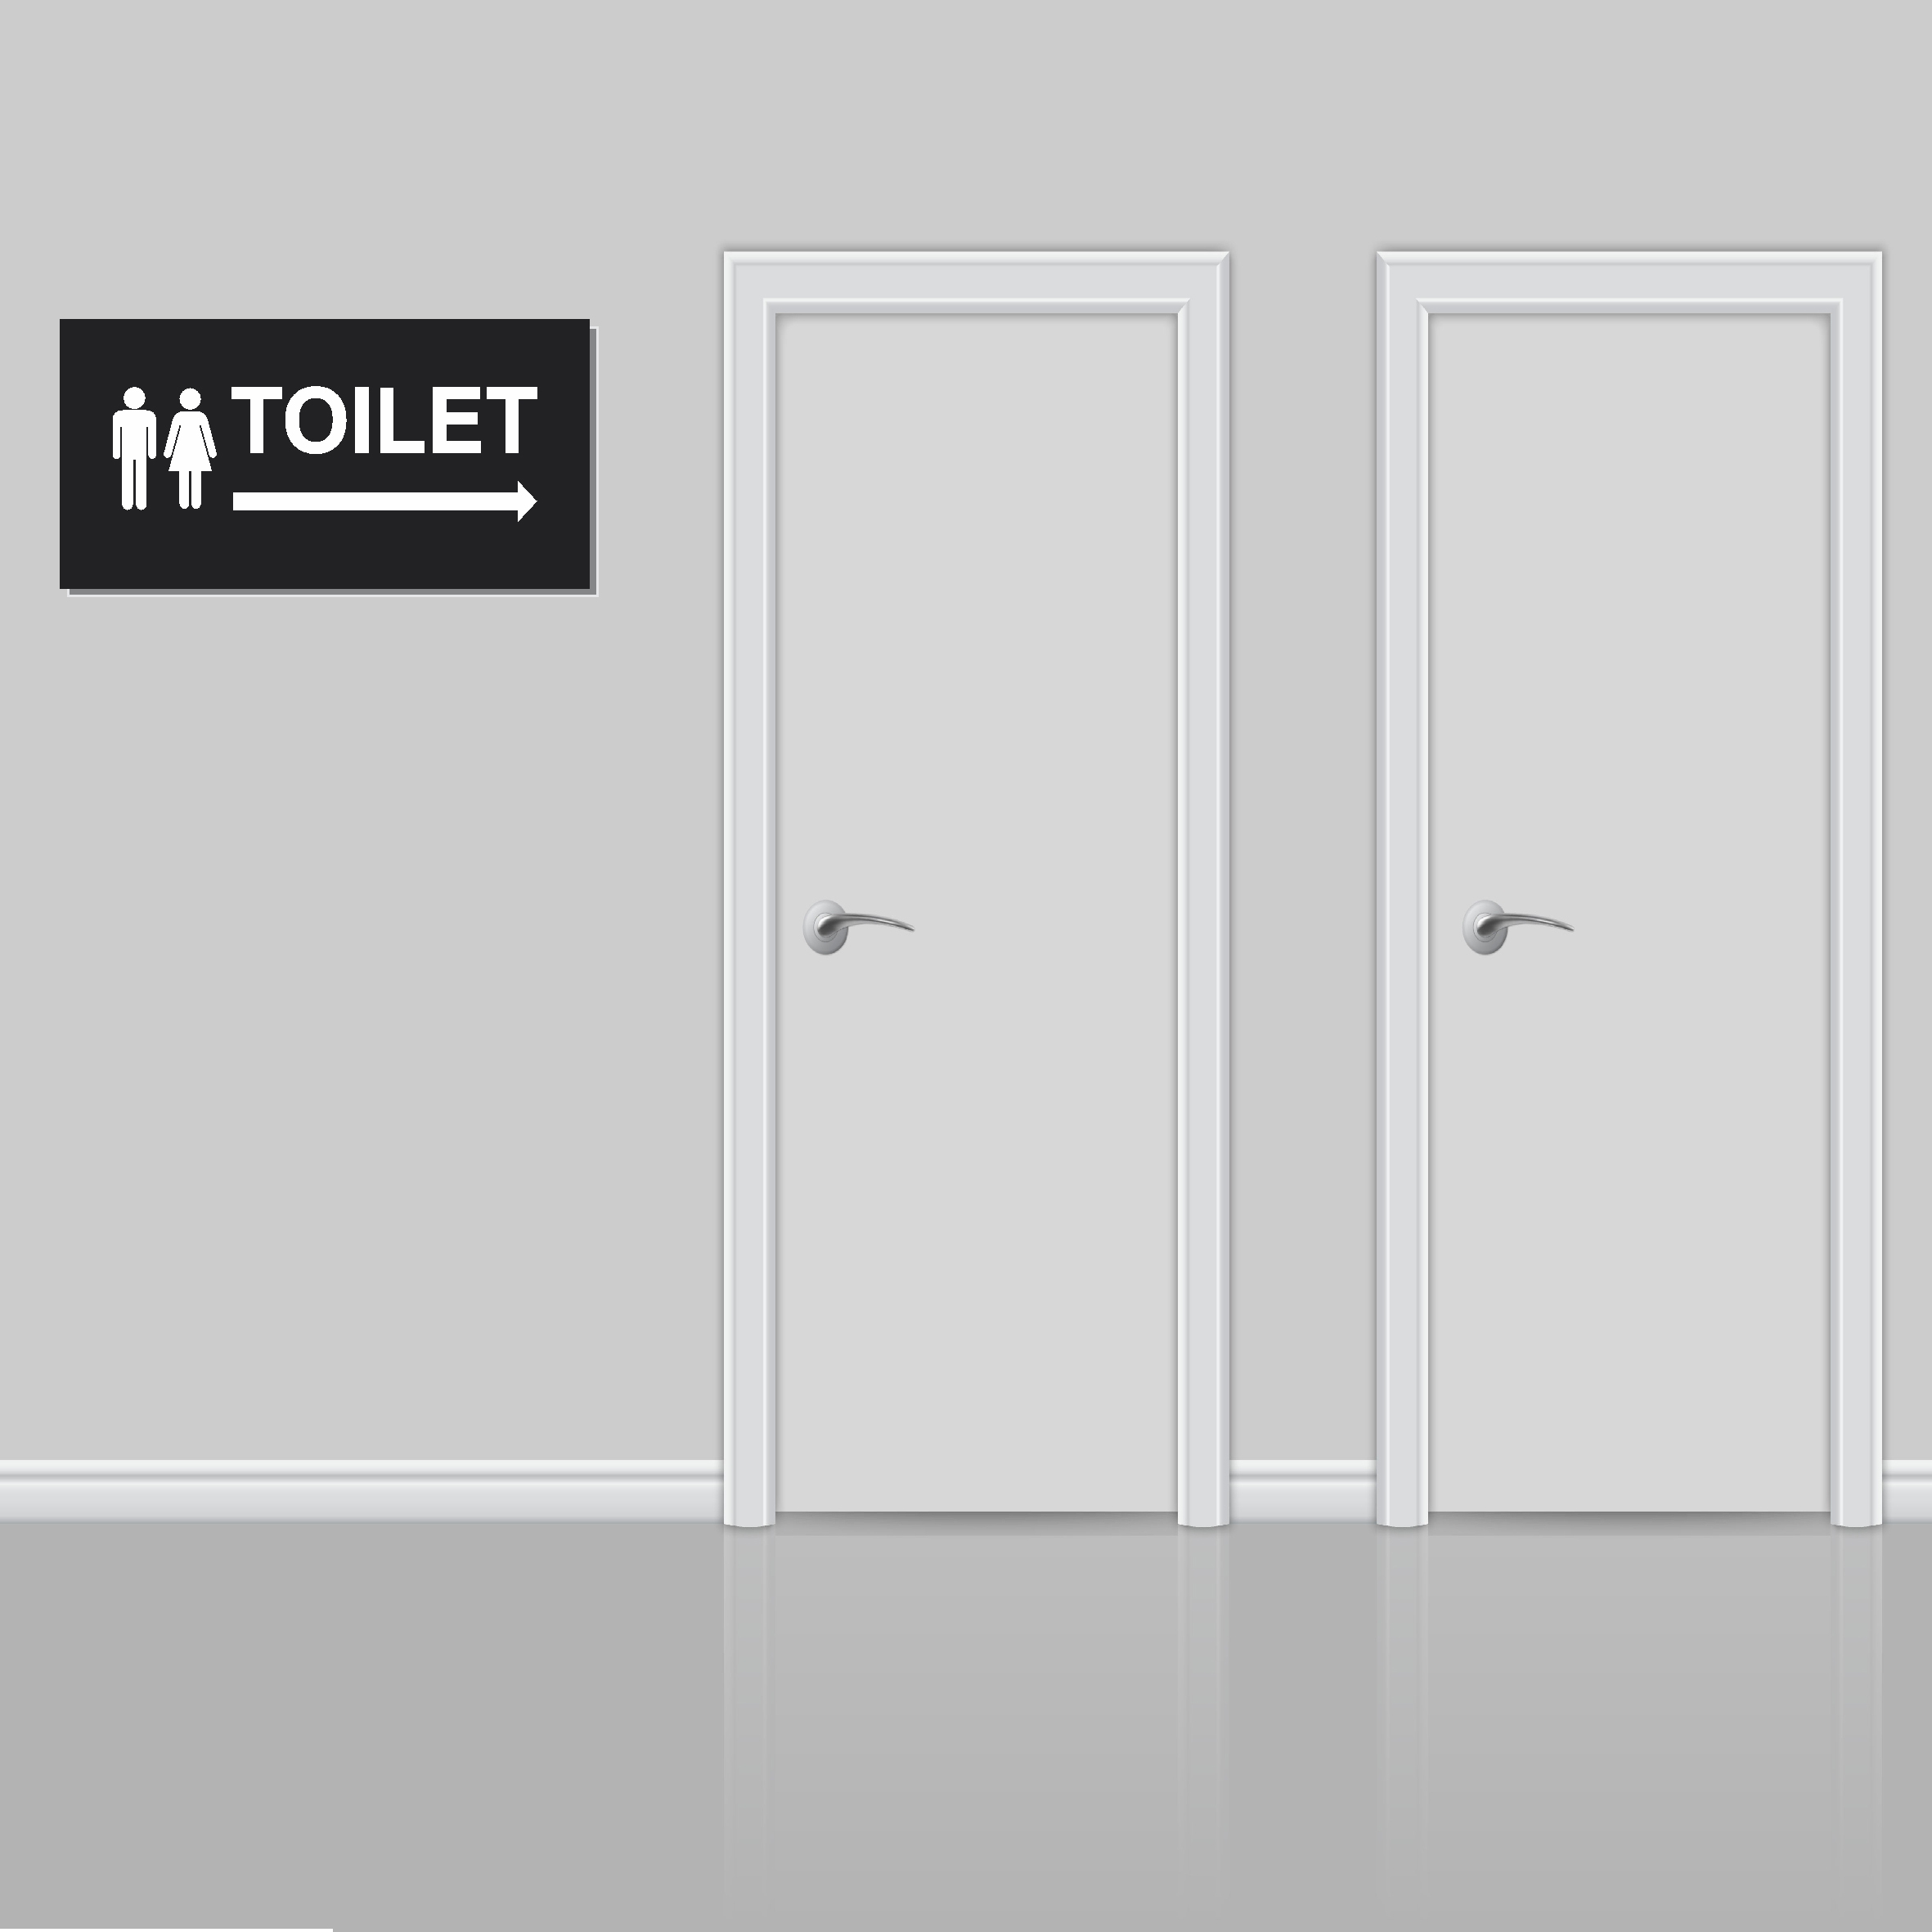 Biển báo hướng dẫn toilet